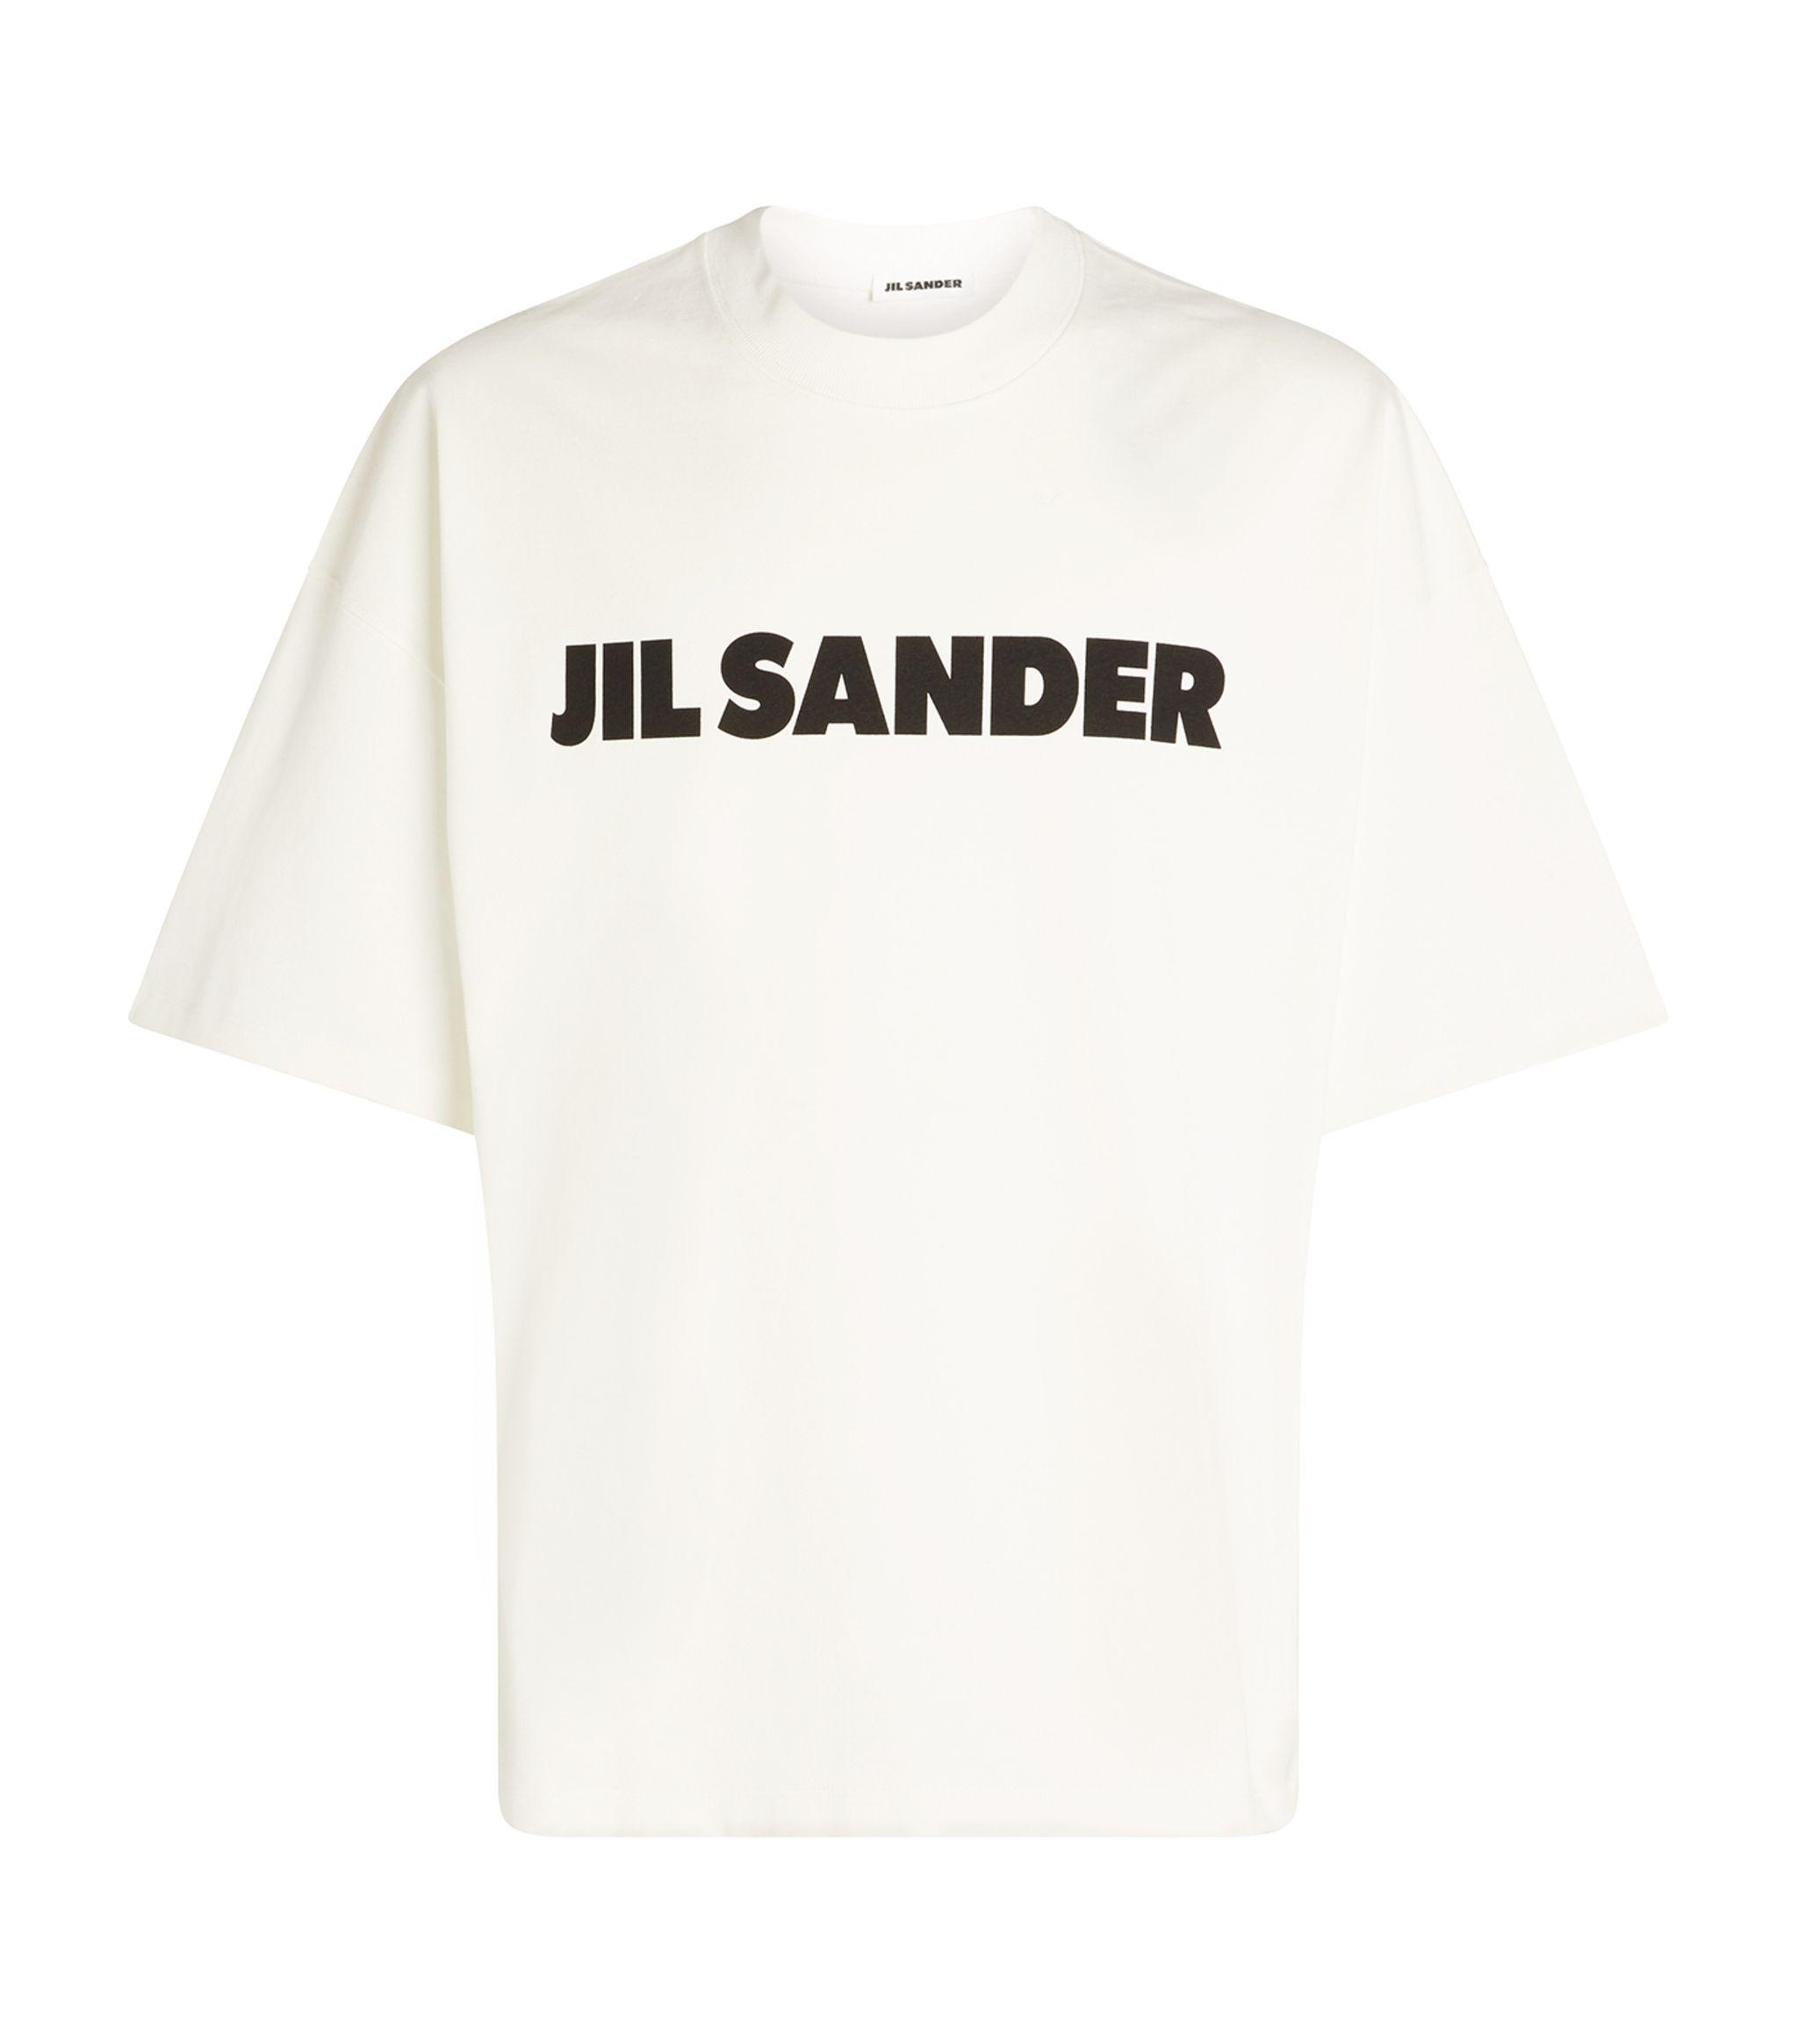 Jil Sander Canvas Oversized Logo T-shirt in White for Men - Lyst